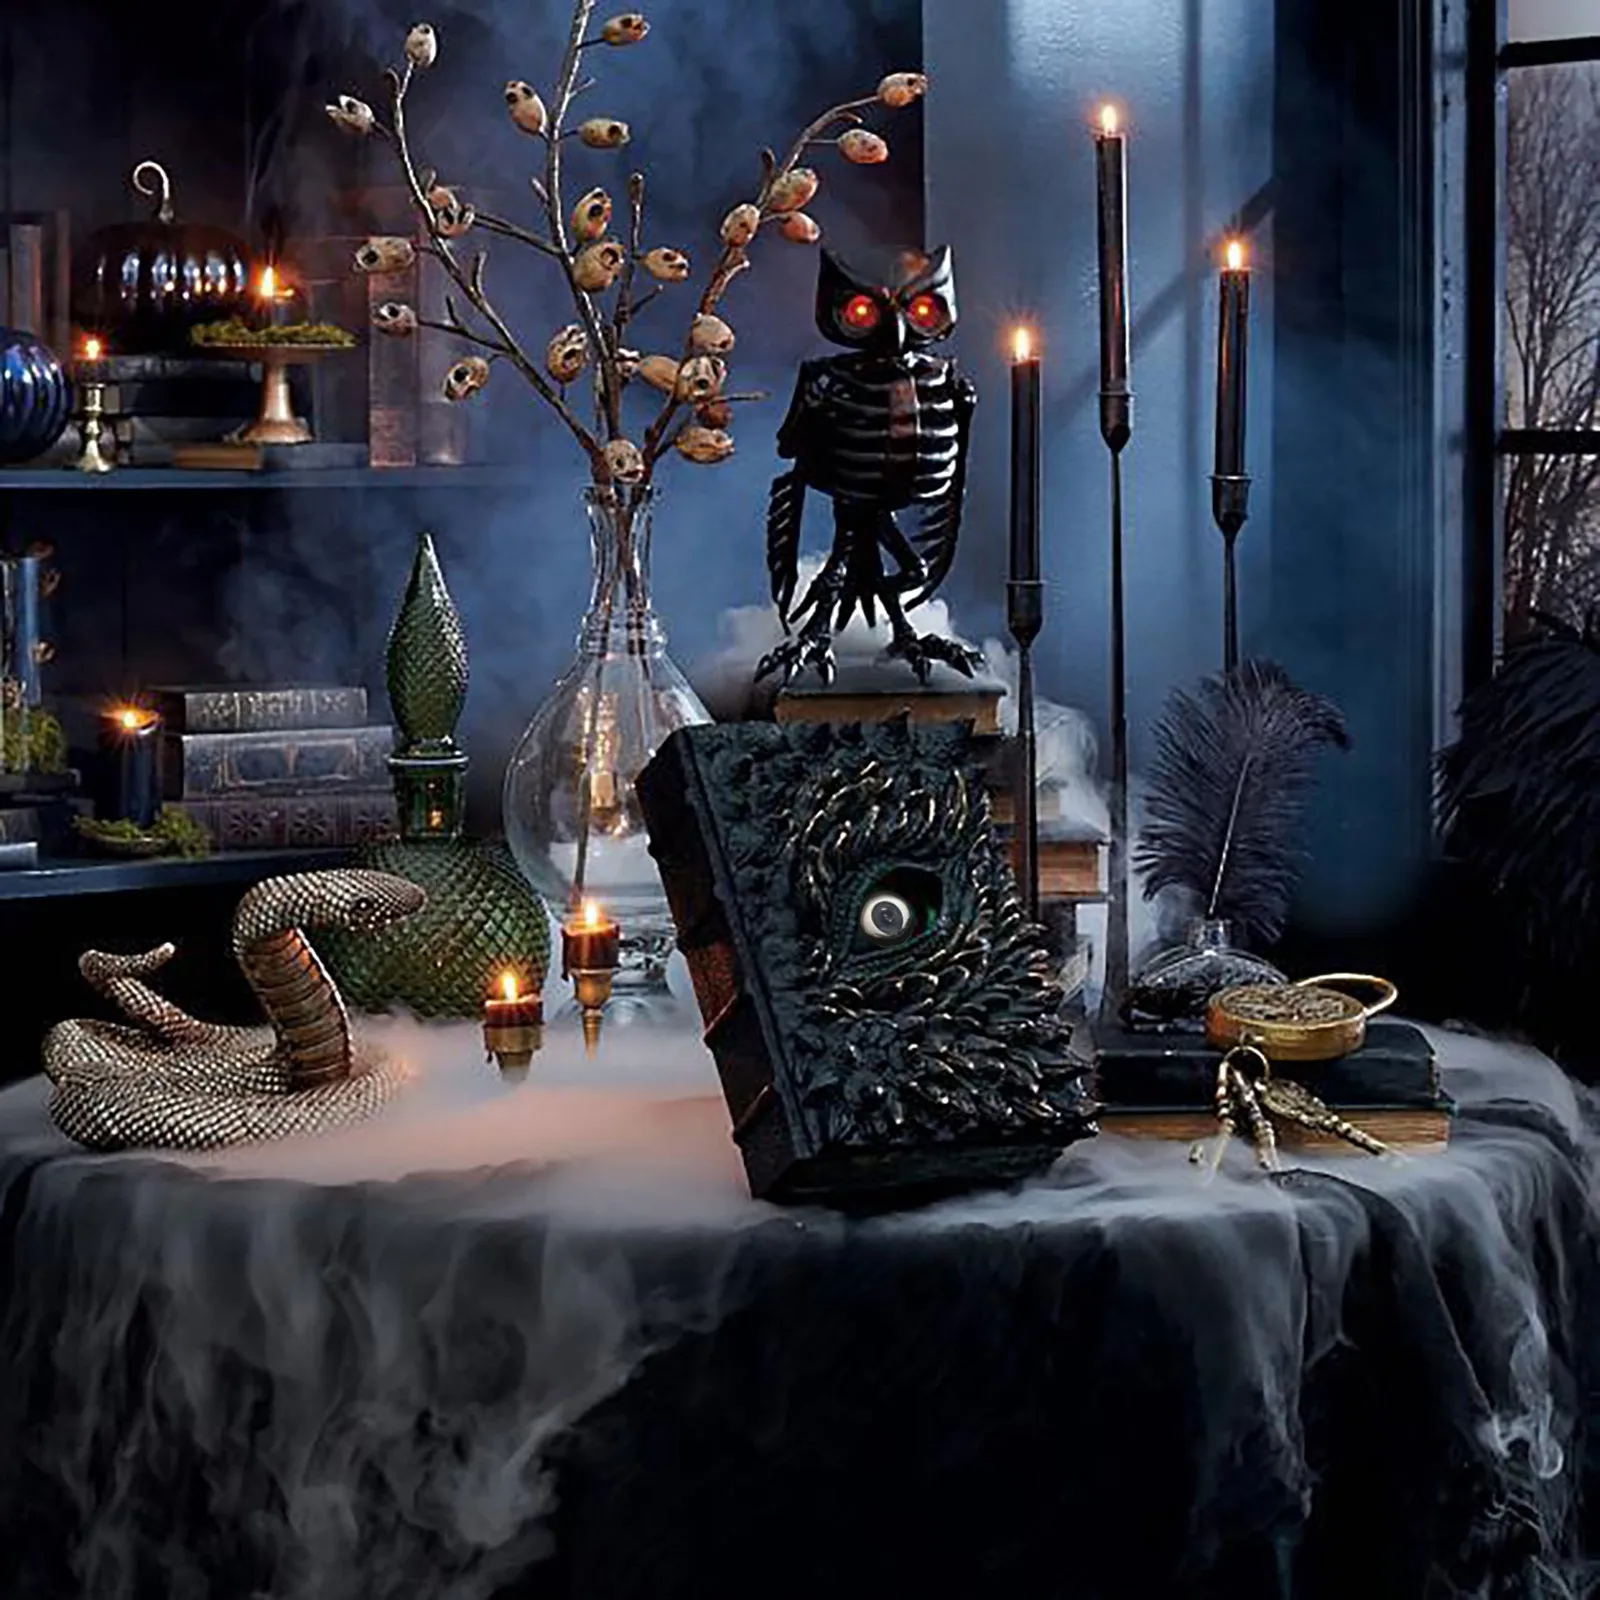 

Чехол с 3d драконом, подставка для блокнота в стиле ретро, табличка на Хэллоуин, рельефные украшения для дневника, подарок на день рождения